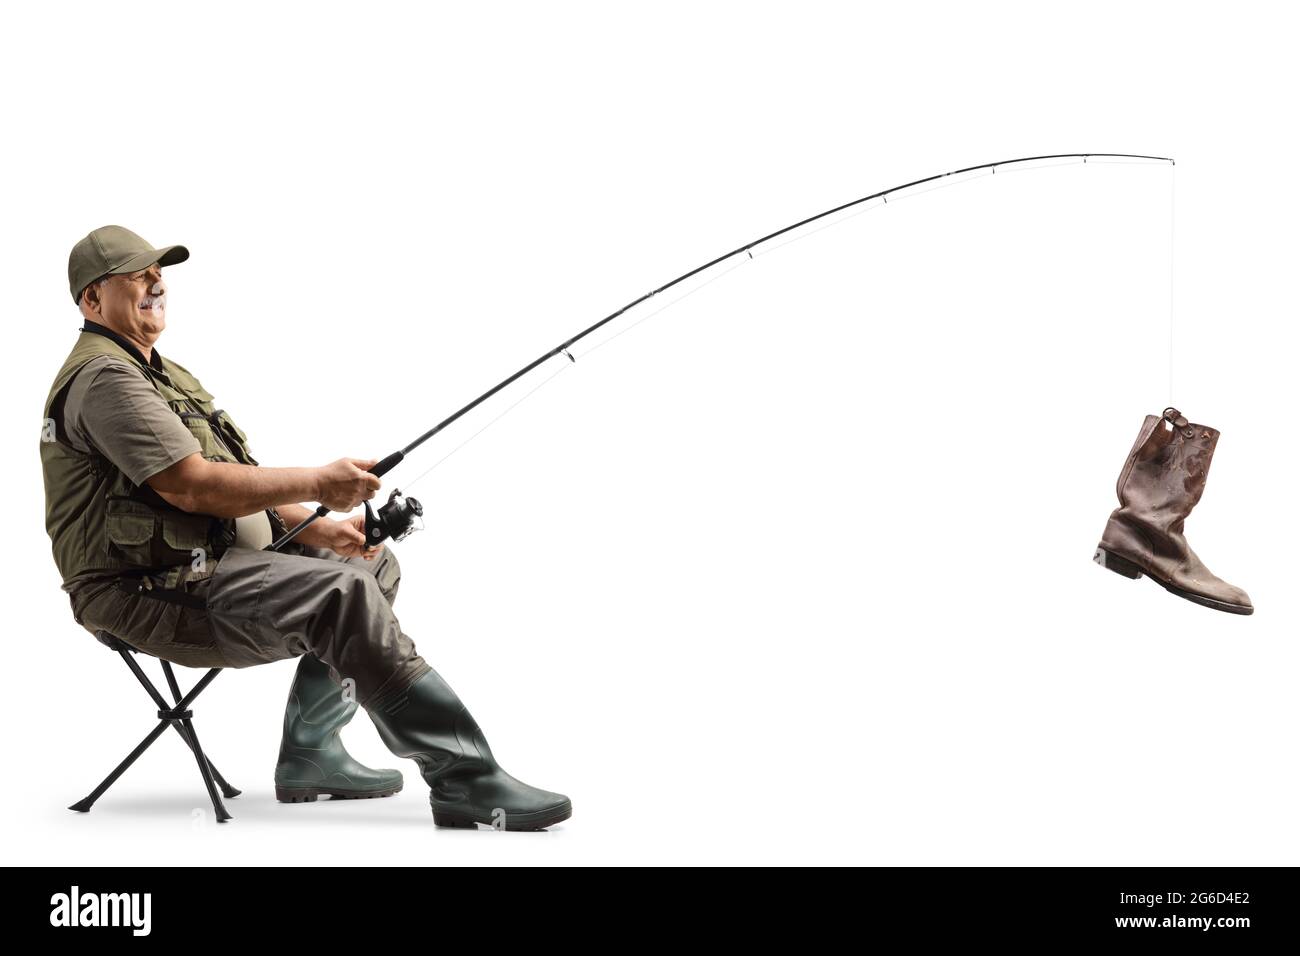 Risultati immagini per pescatore con canna da pesca